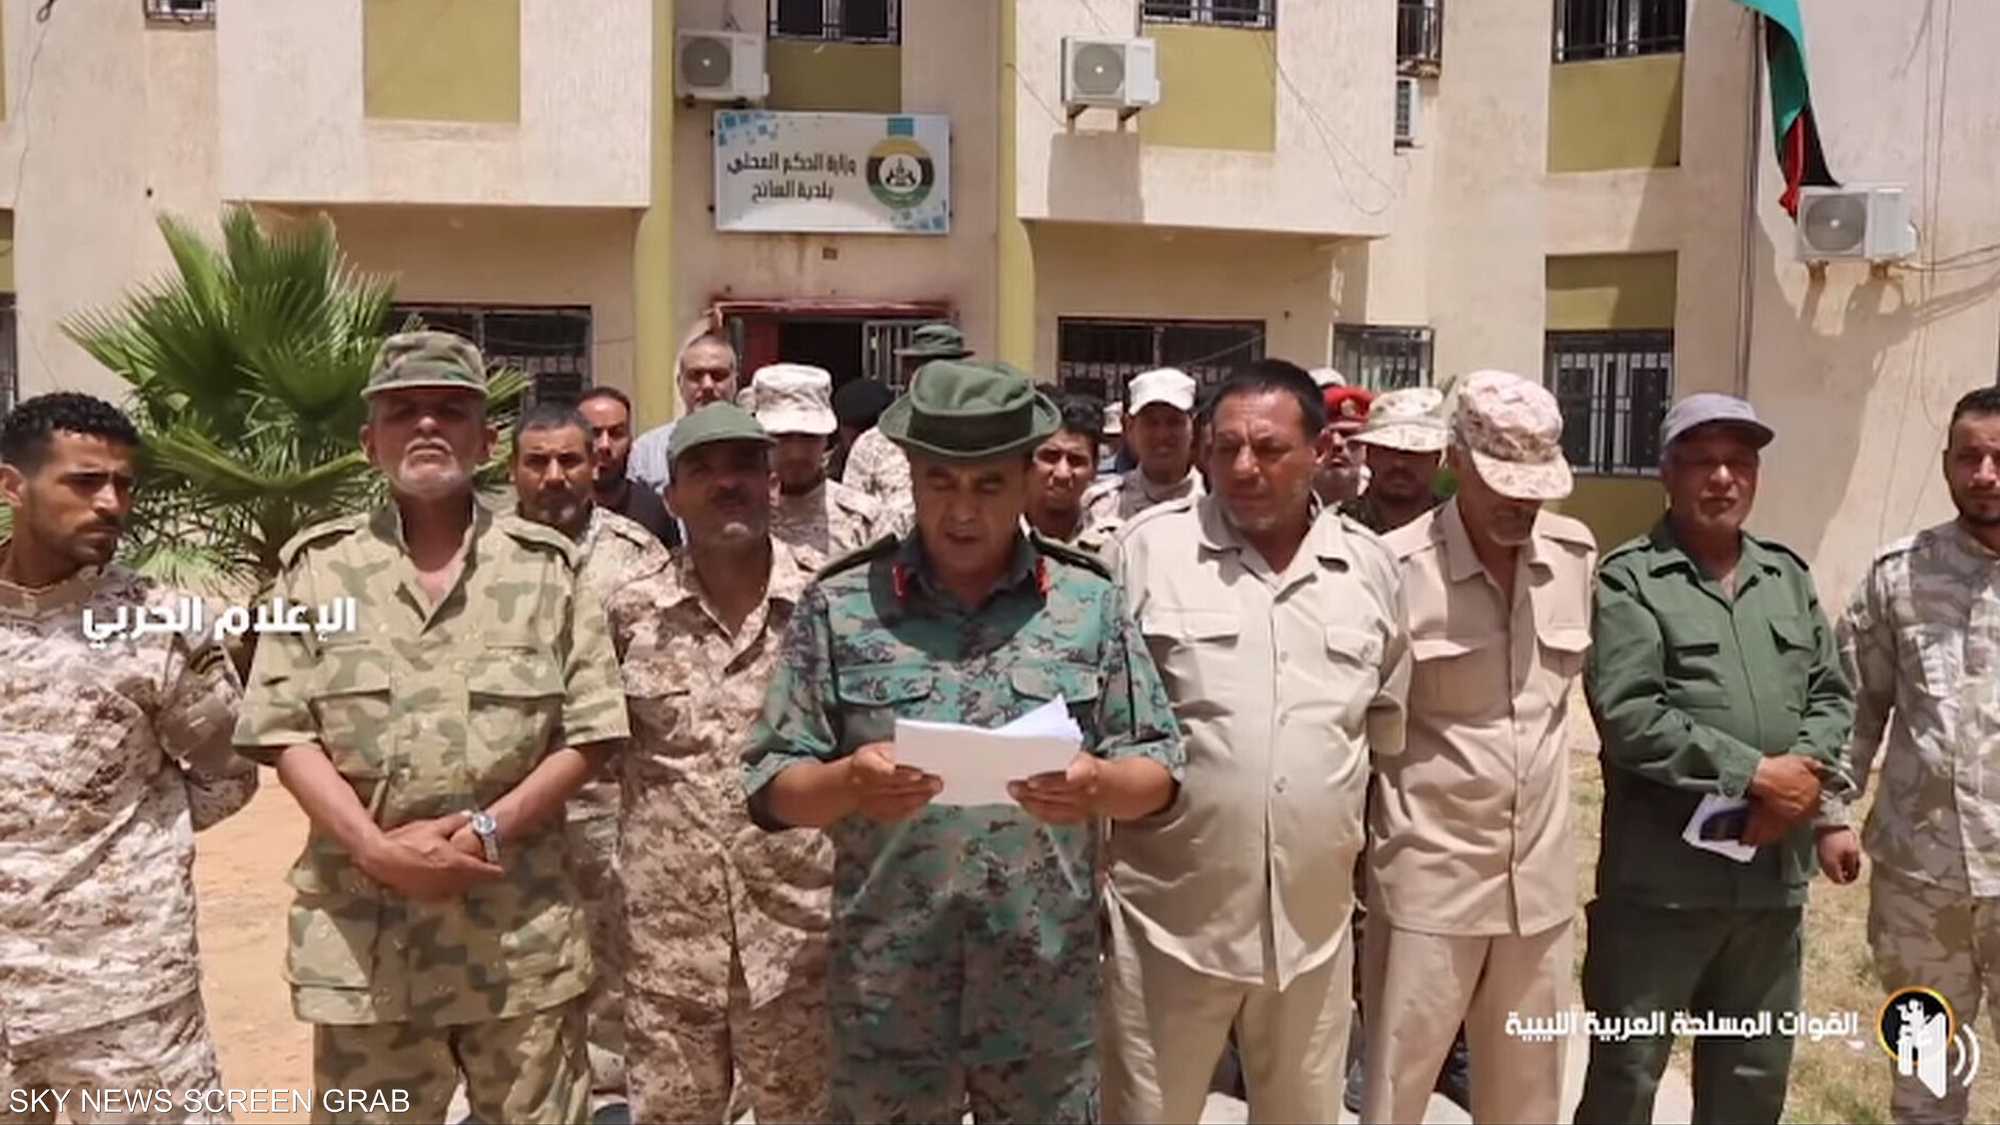 كتيبة تابعة لميليشيات طرابلس تنضم للجيش الوطني